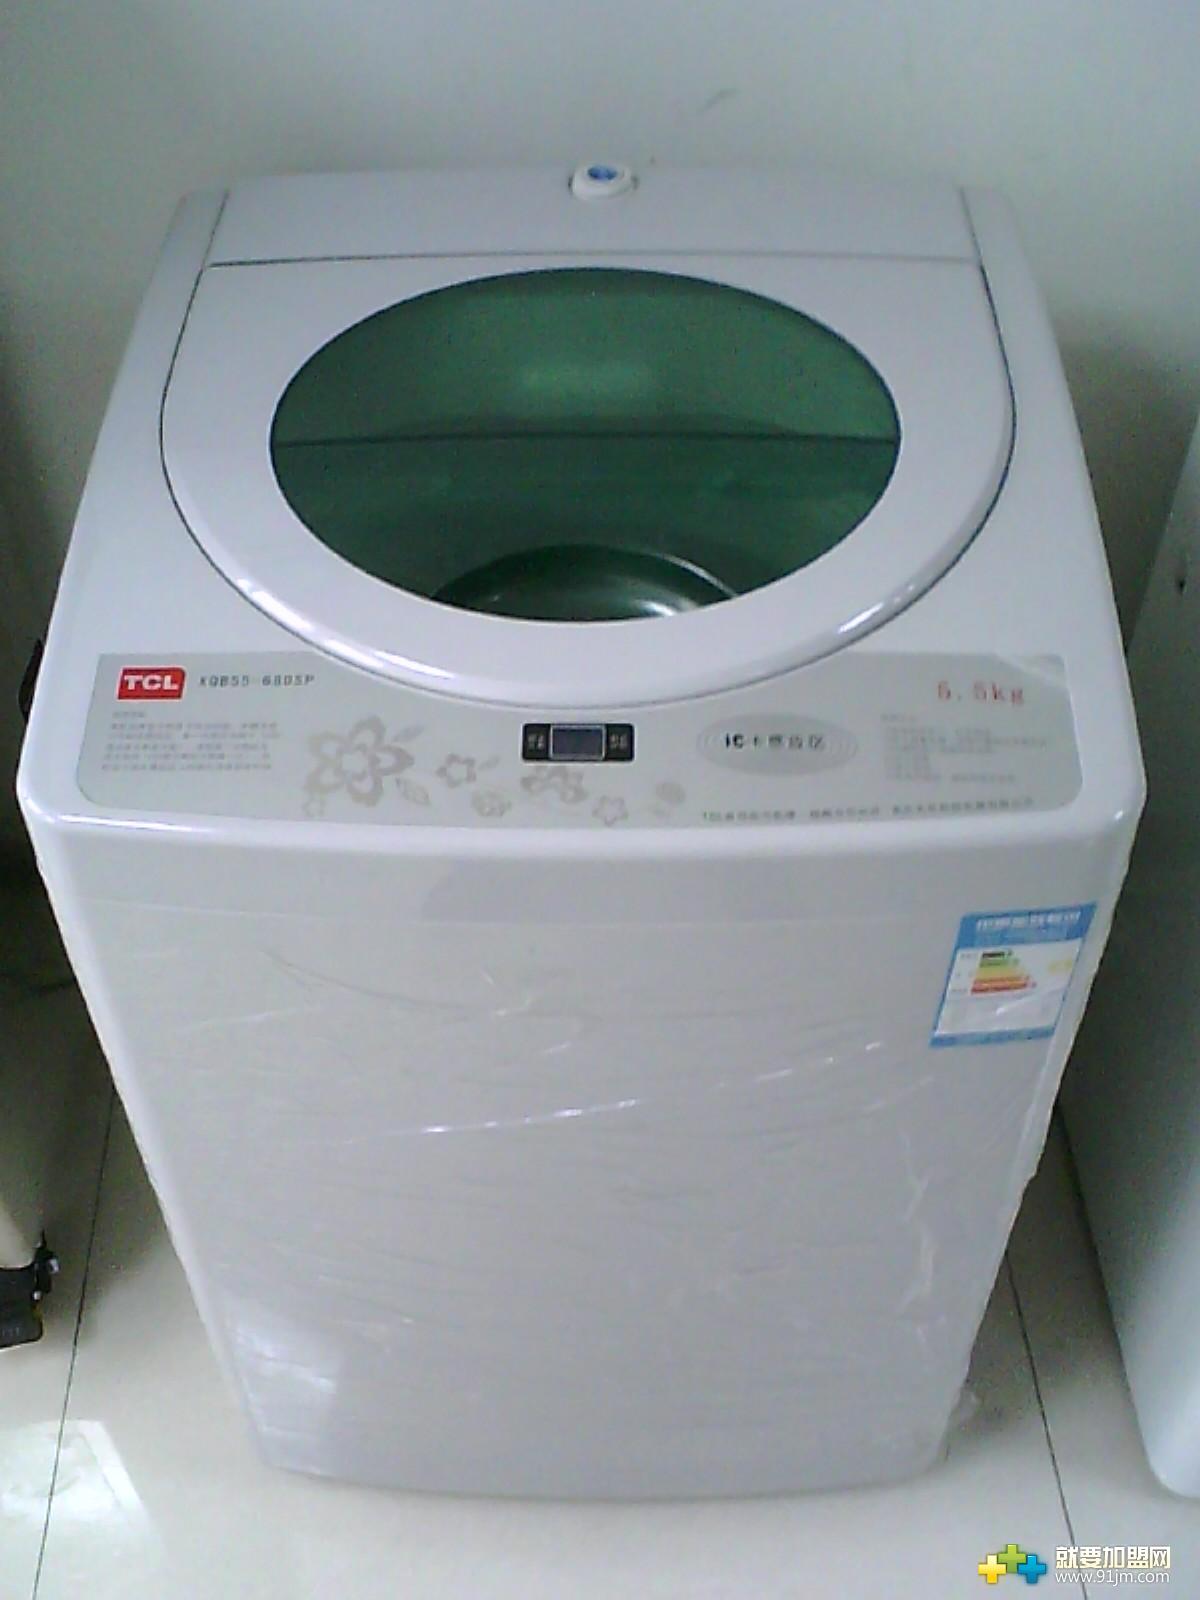 TCL自助式投币洗衣机加盟